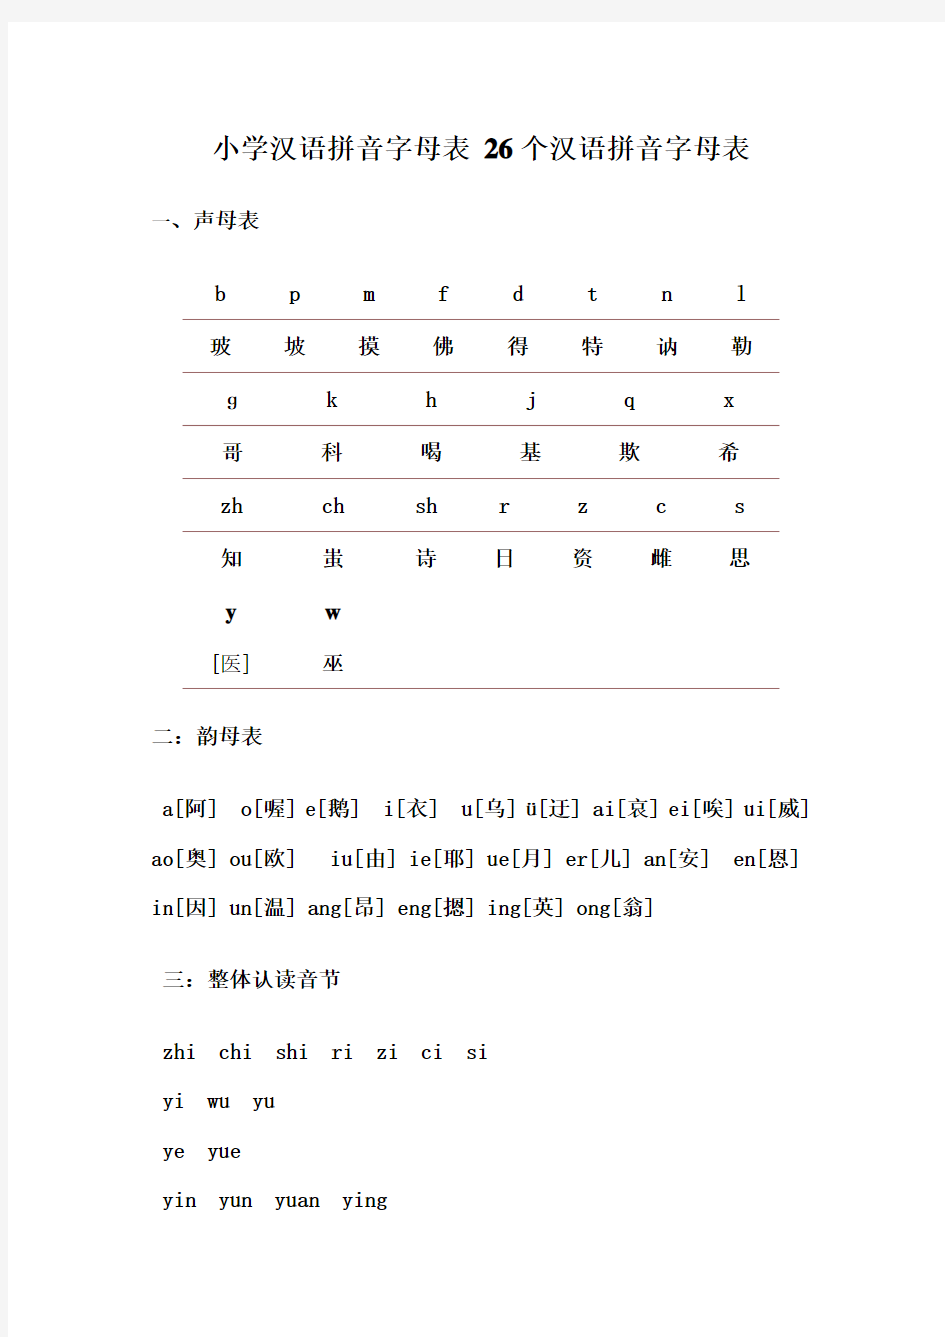 小学汉语拼音字母表_26个汉语拼音字母表